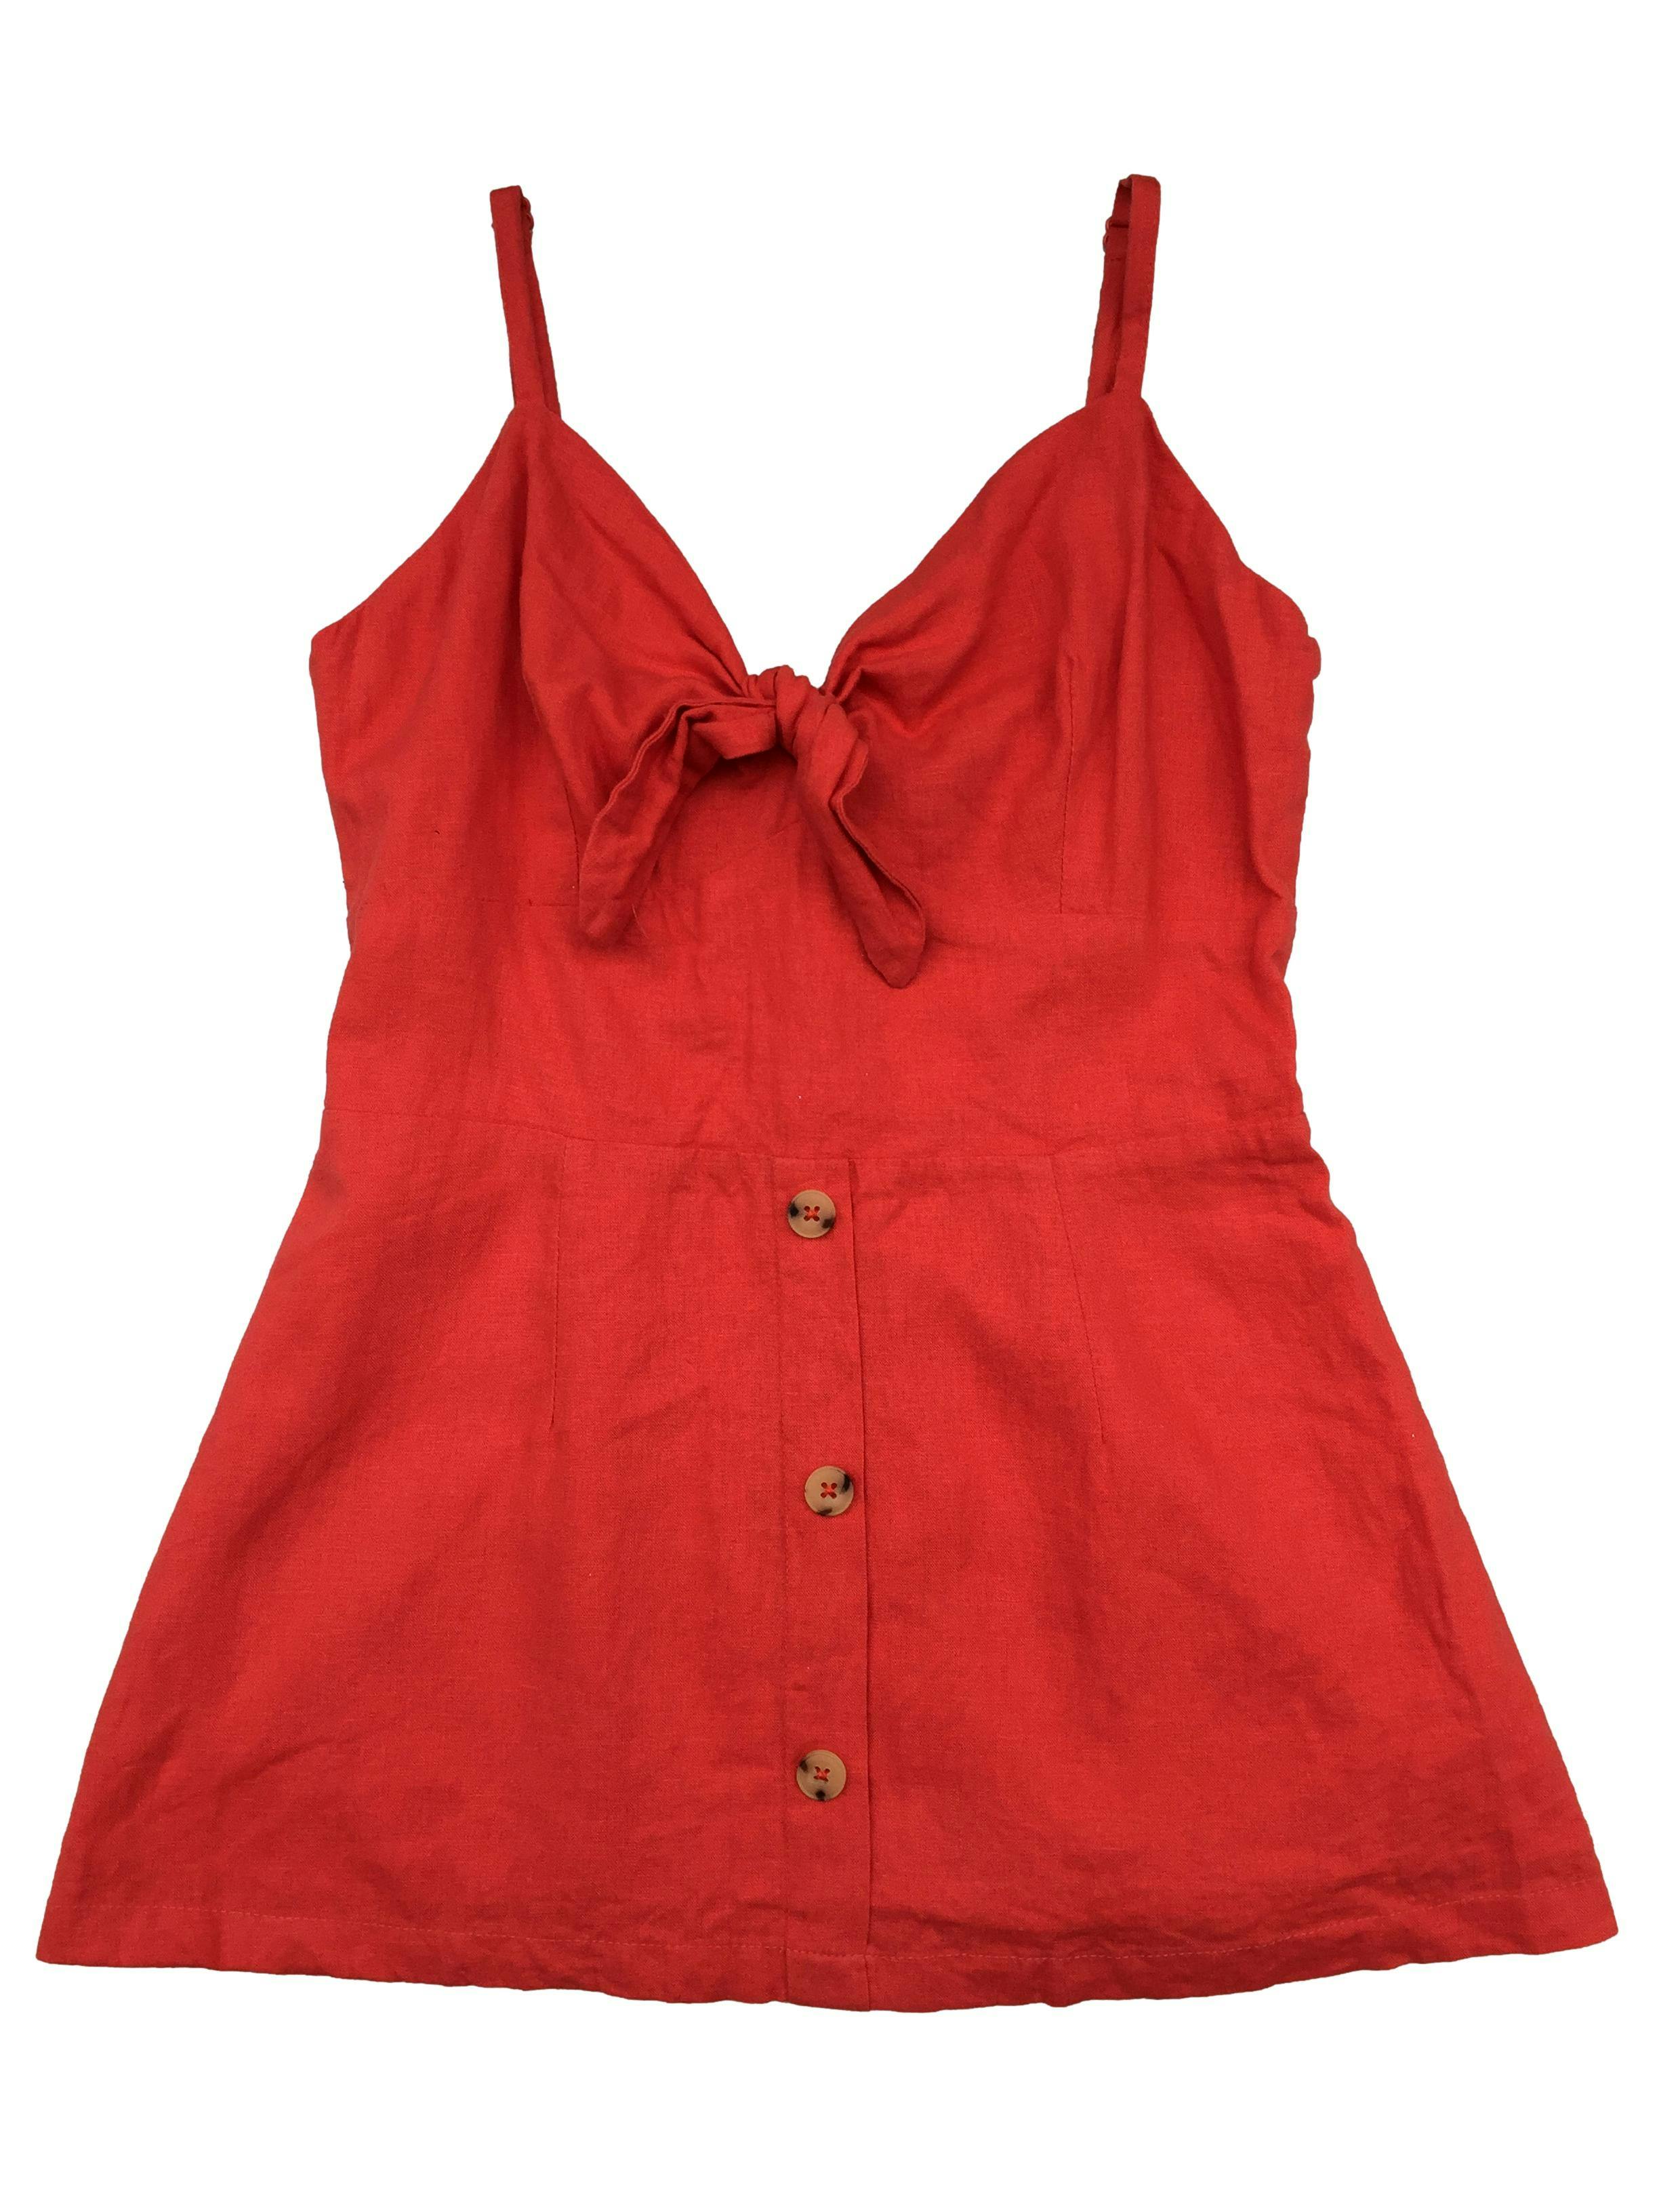 Blusa roja basement con nudo en el pecho y panal de abeja con cierre en la espalda. Busto 76cm sin estirar, Largo 57cm.